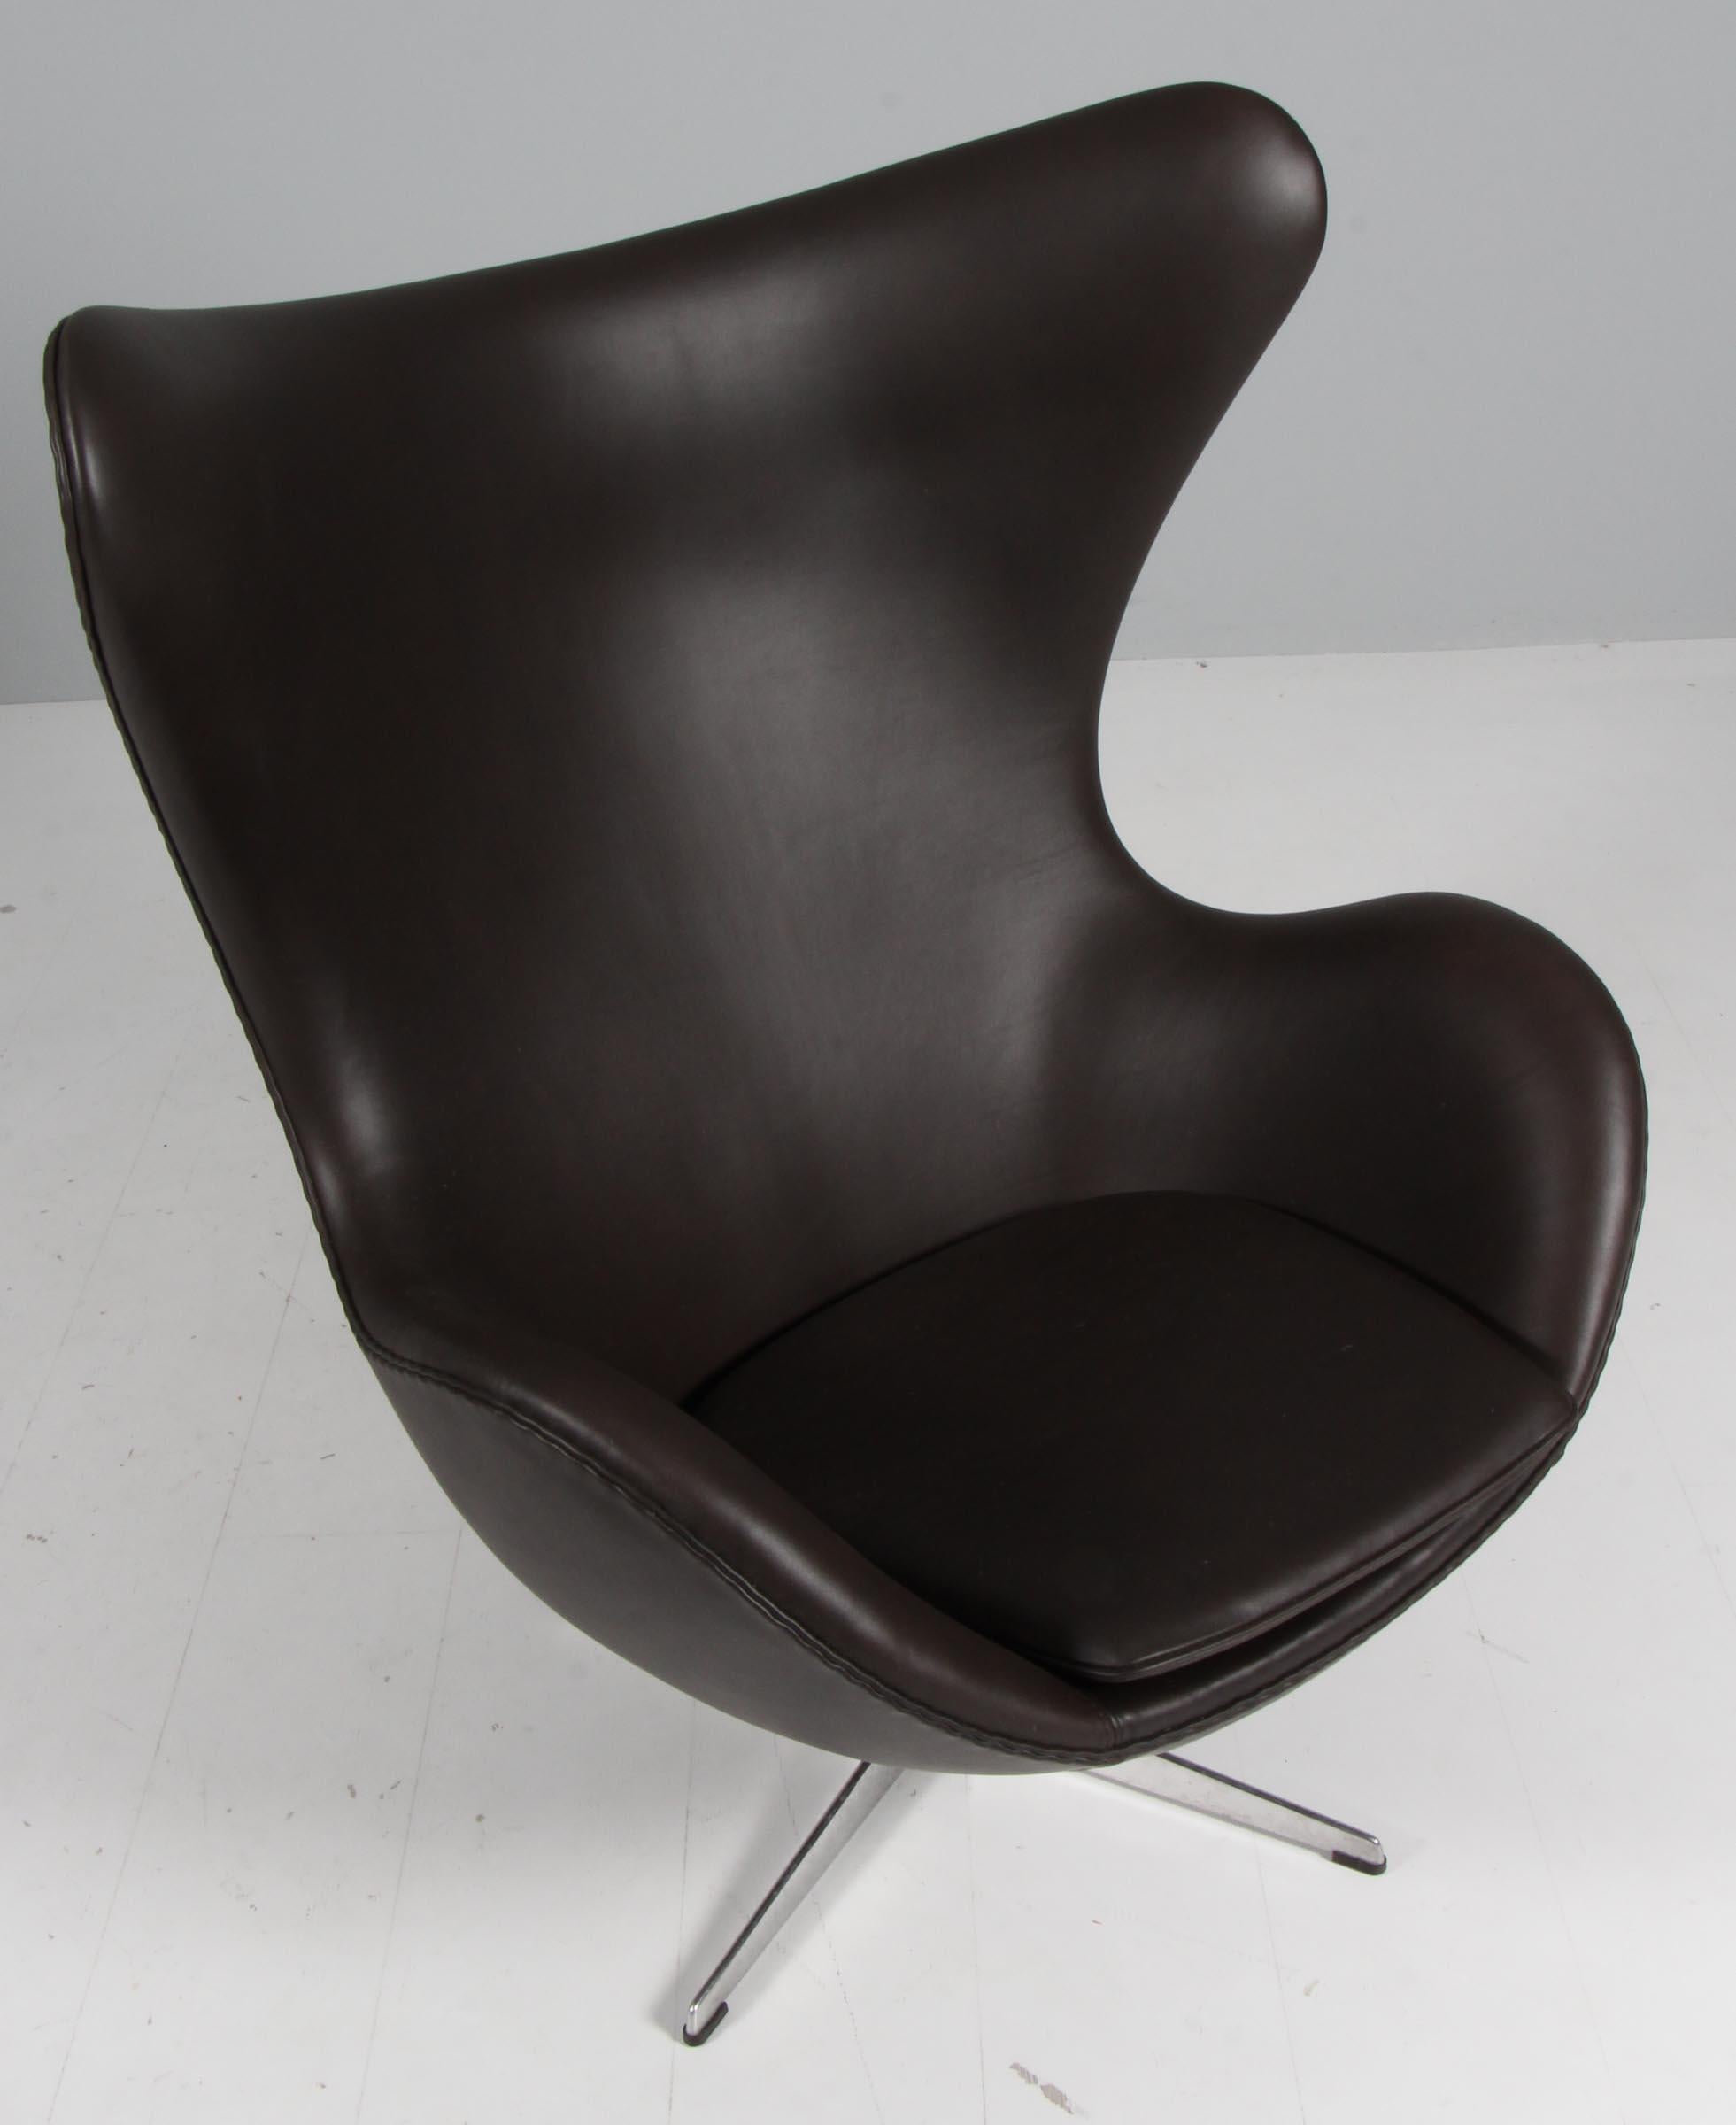 Chaise longue Arne Jacobsen modèle Egg. Nouveau revêtement en cuir aniline mokka butter.

Base profilée à quatre étoiles.

Fabriqué par Fritz Hansen.

Cette chaise emblématique est l'une des plus célèbres au monde et est reconnue par les amateurs de